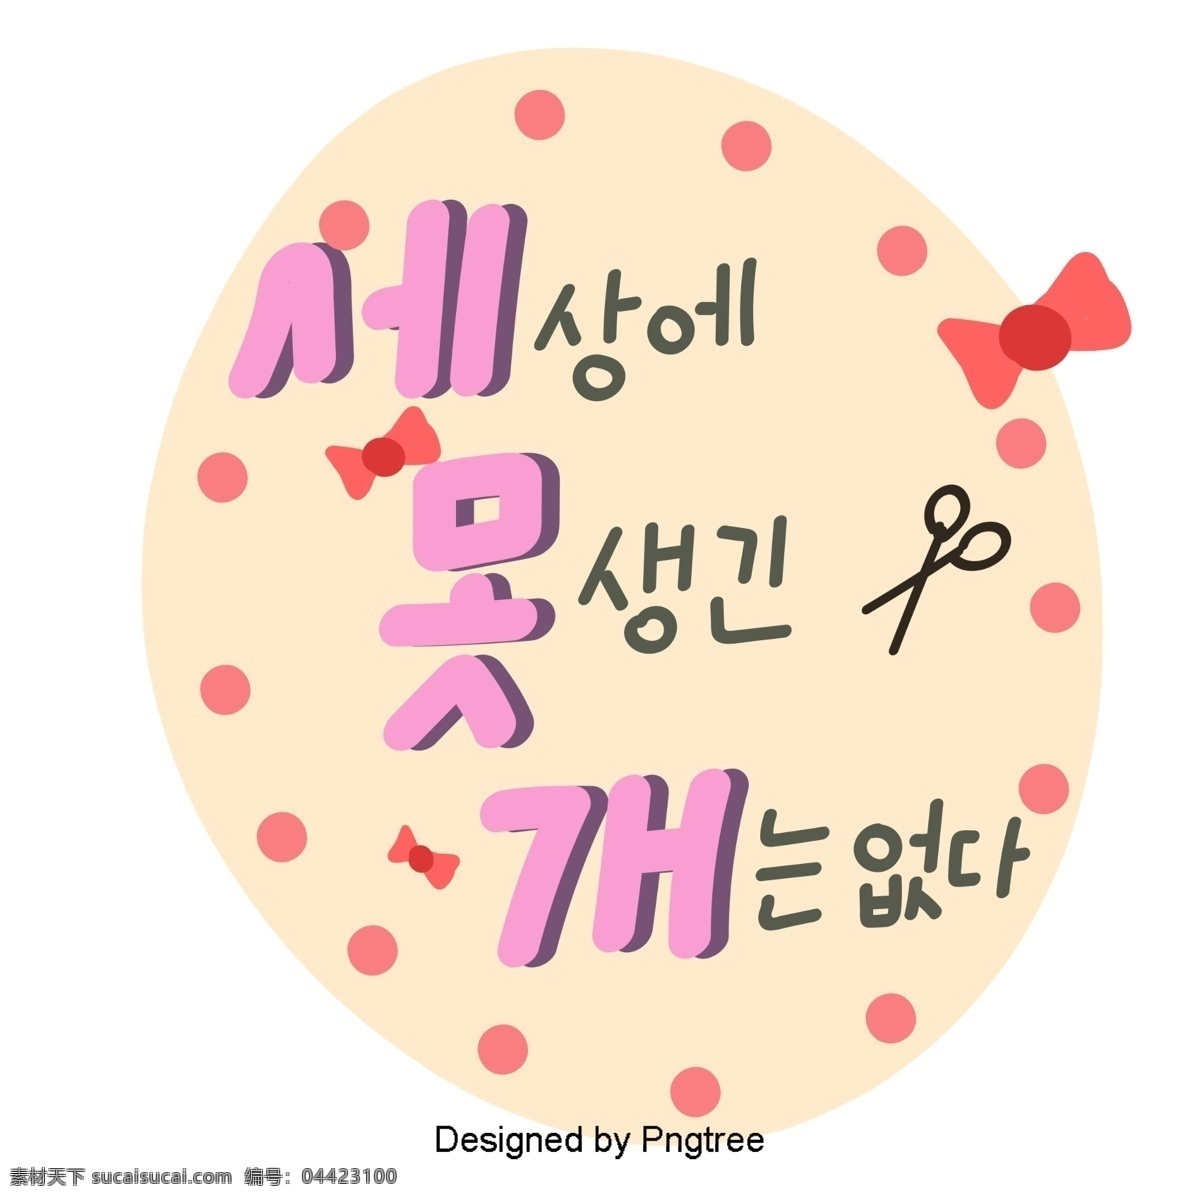 粉红色 韩国 字体 可爱 的卡 通 风格 前 三个 弓 元素 没有 字形 甜茶 因素 样式 ai材料 贴纸 卡通卡通 心脏形 粉 无法打开